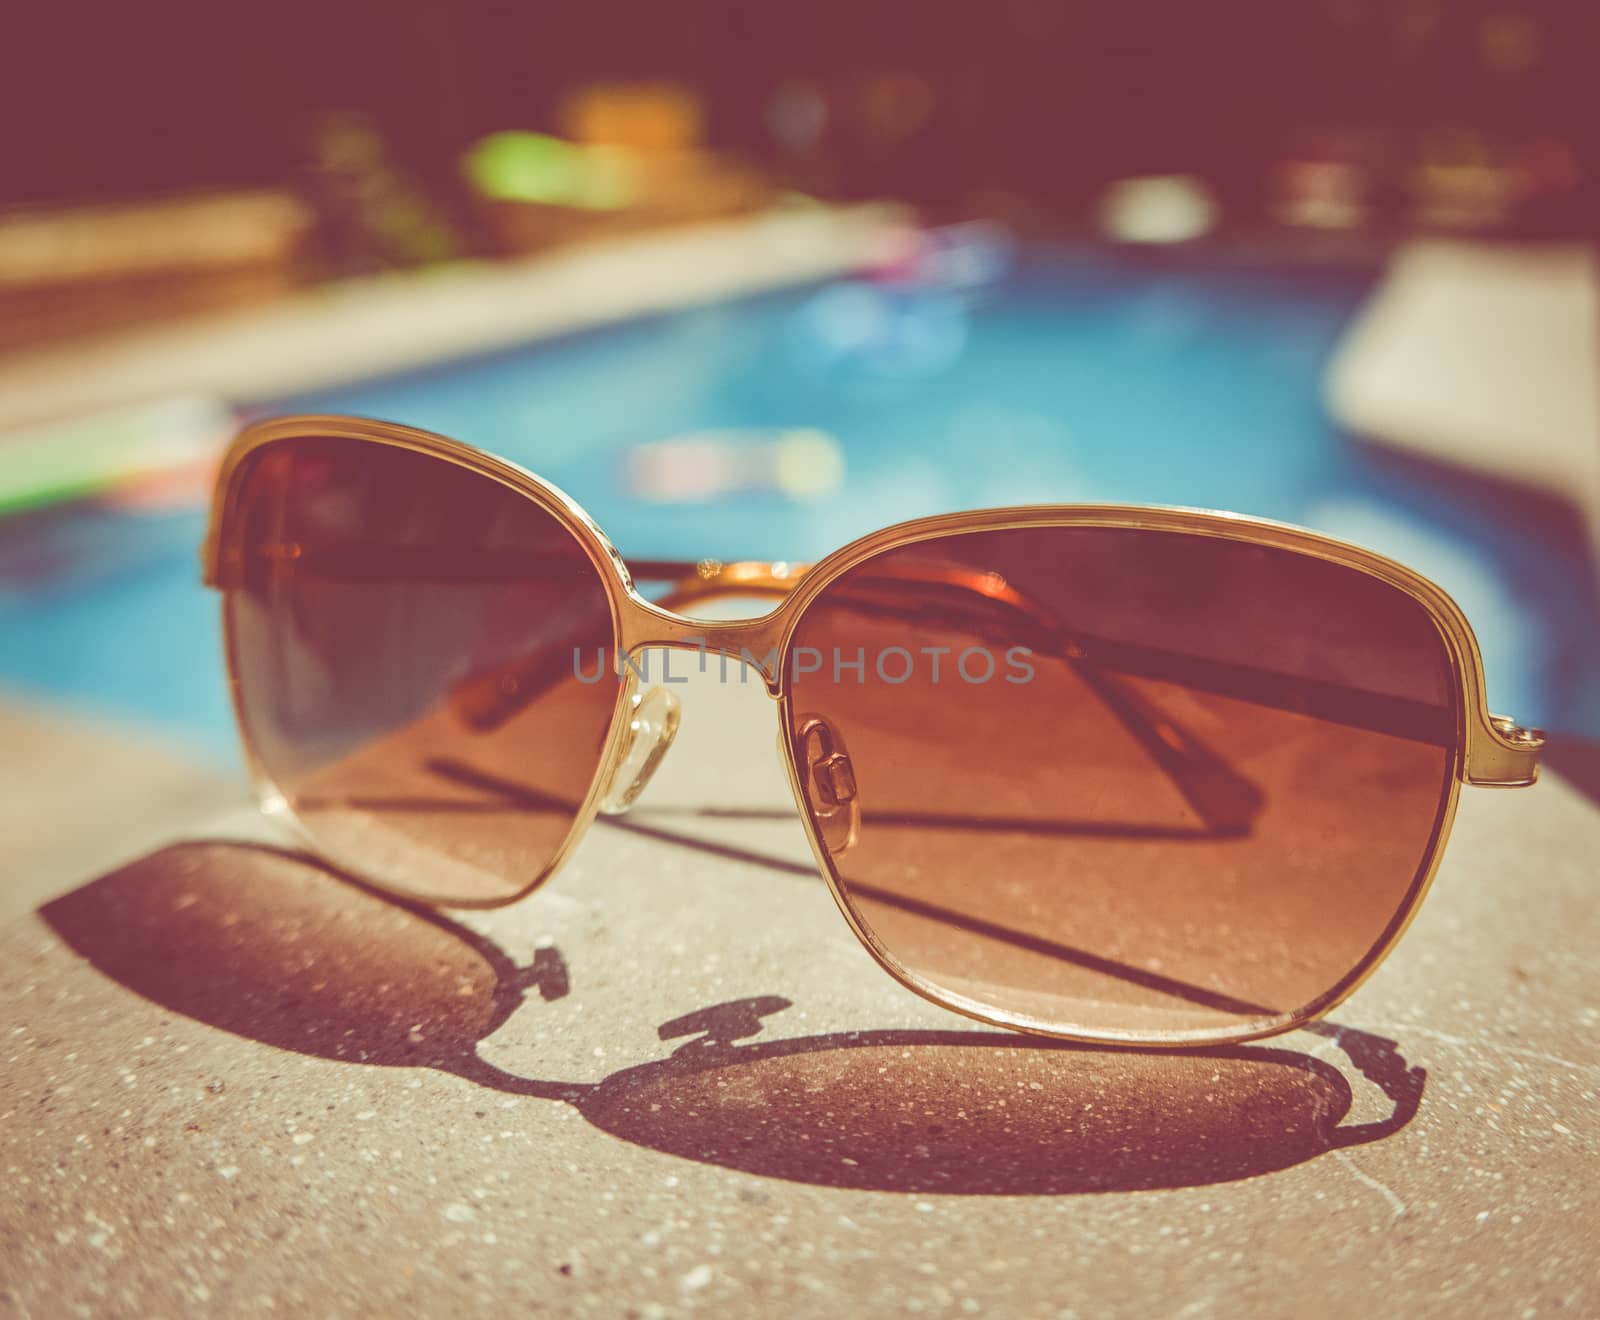 Retro Vintage Pool Sunglasses by mrdoomits